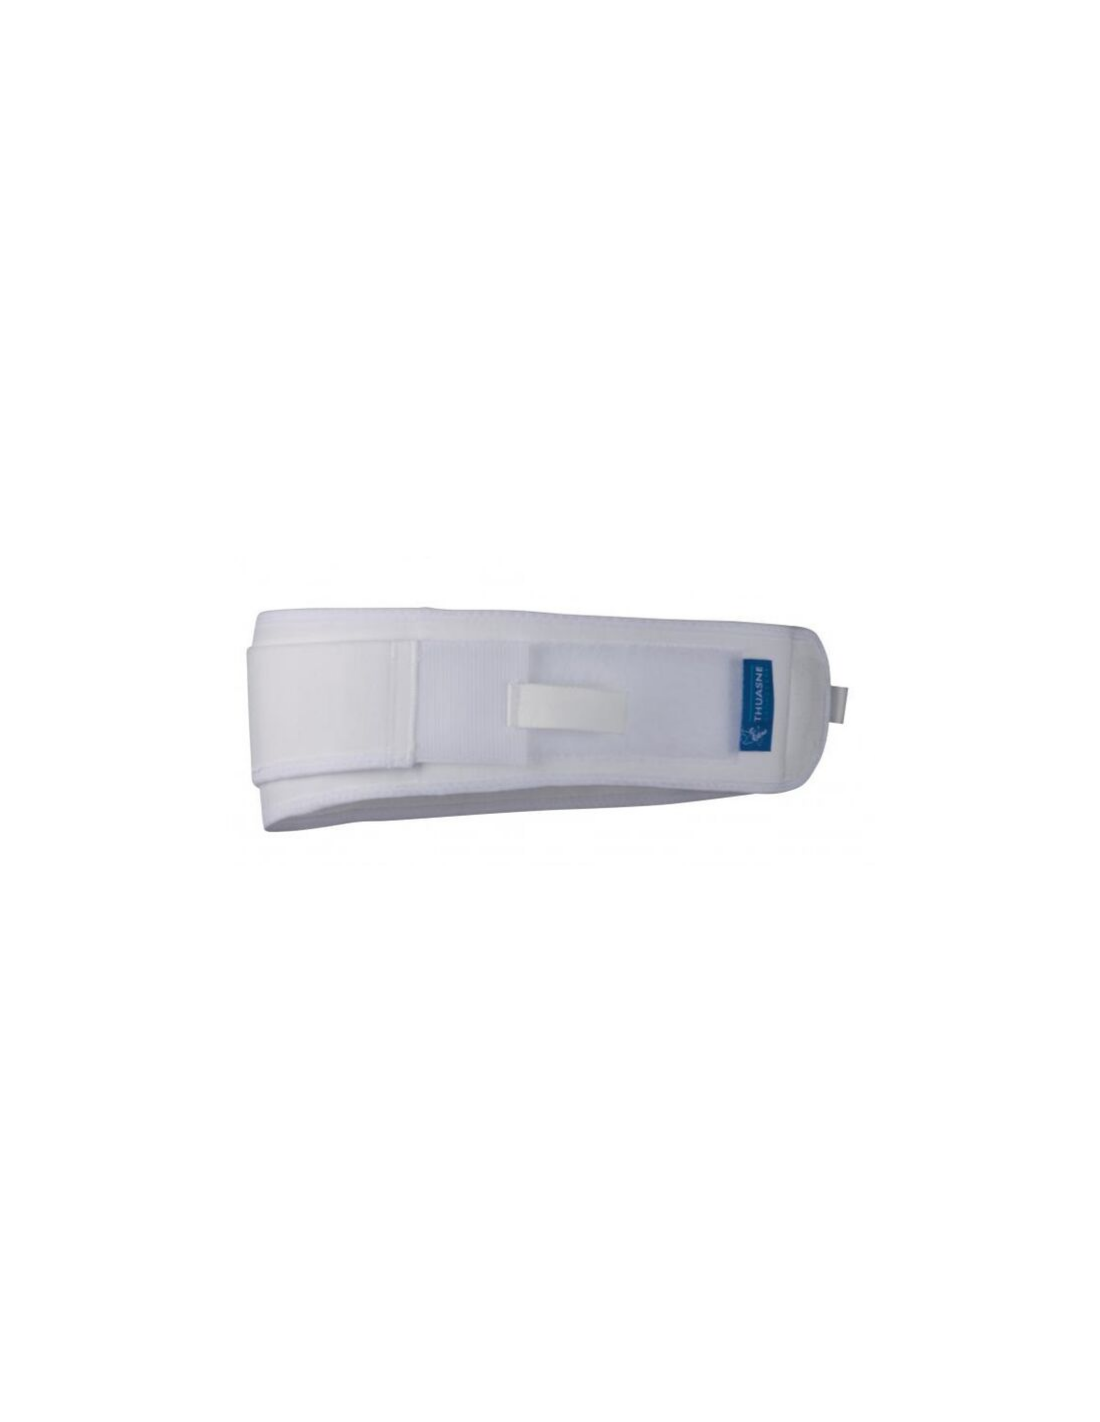 Ceinture pelvienne Caliper buckle OS goural AM-PES-05 : Distributeur  national EXCLUSIF d'orthèses auprès des particuliers et professionnels